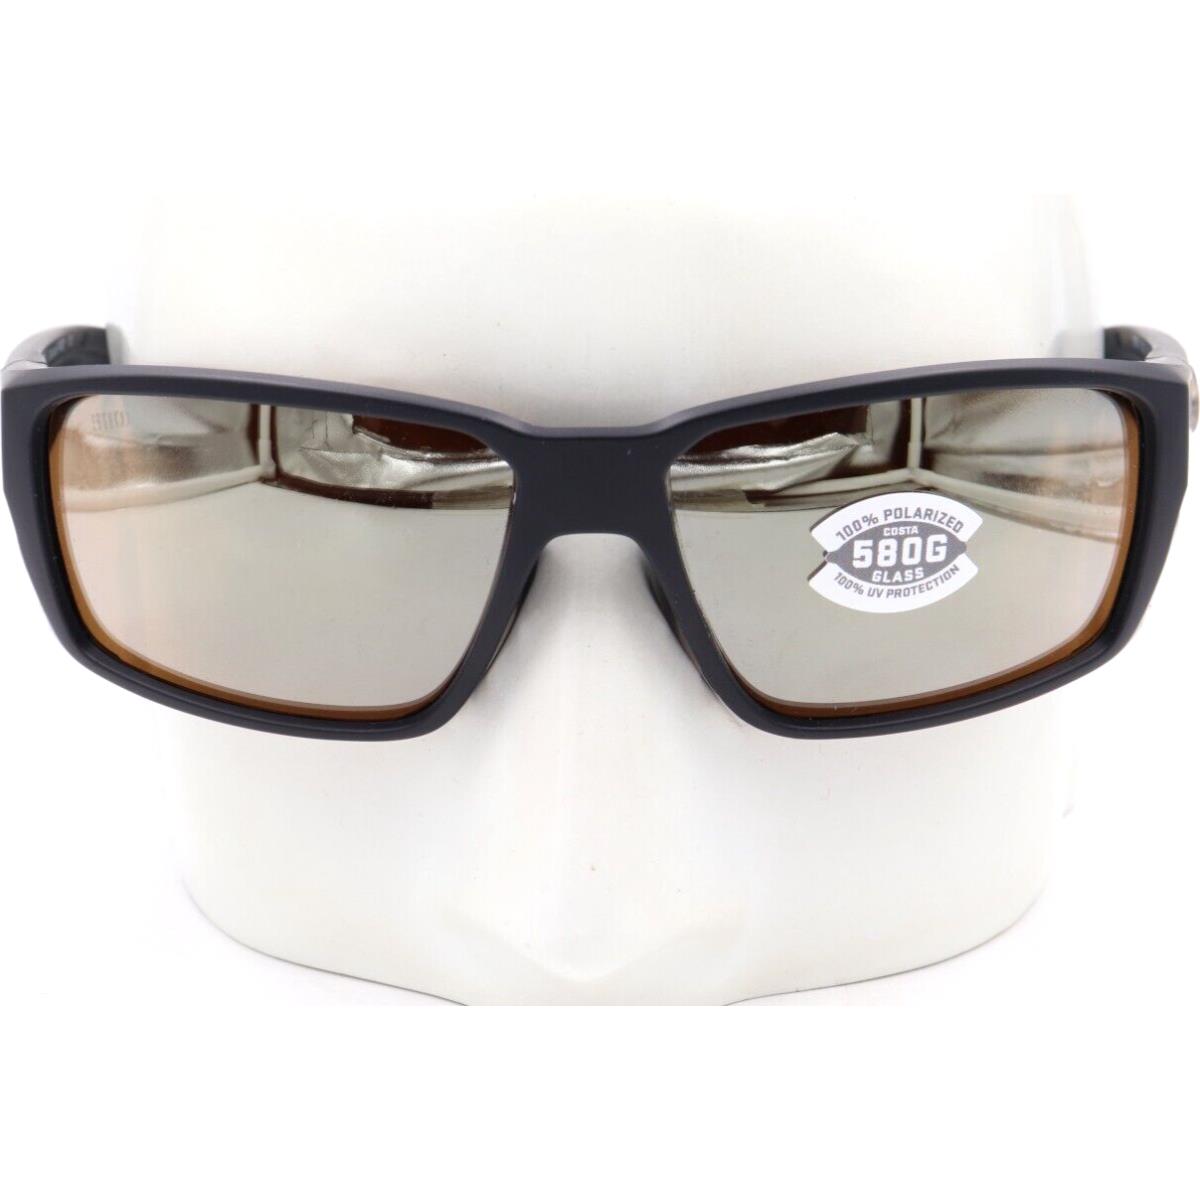 Costa Del Mar Fantail Pro Matte Black Copper 580G Sunglasses 06S9079 90790360